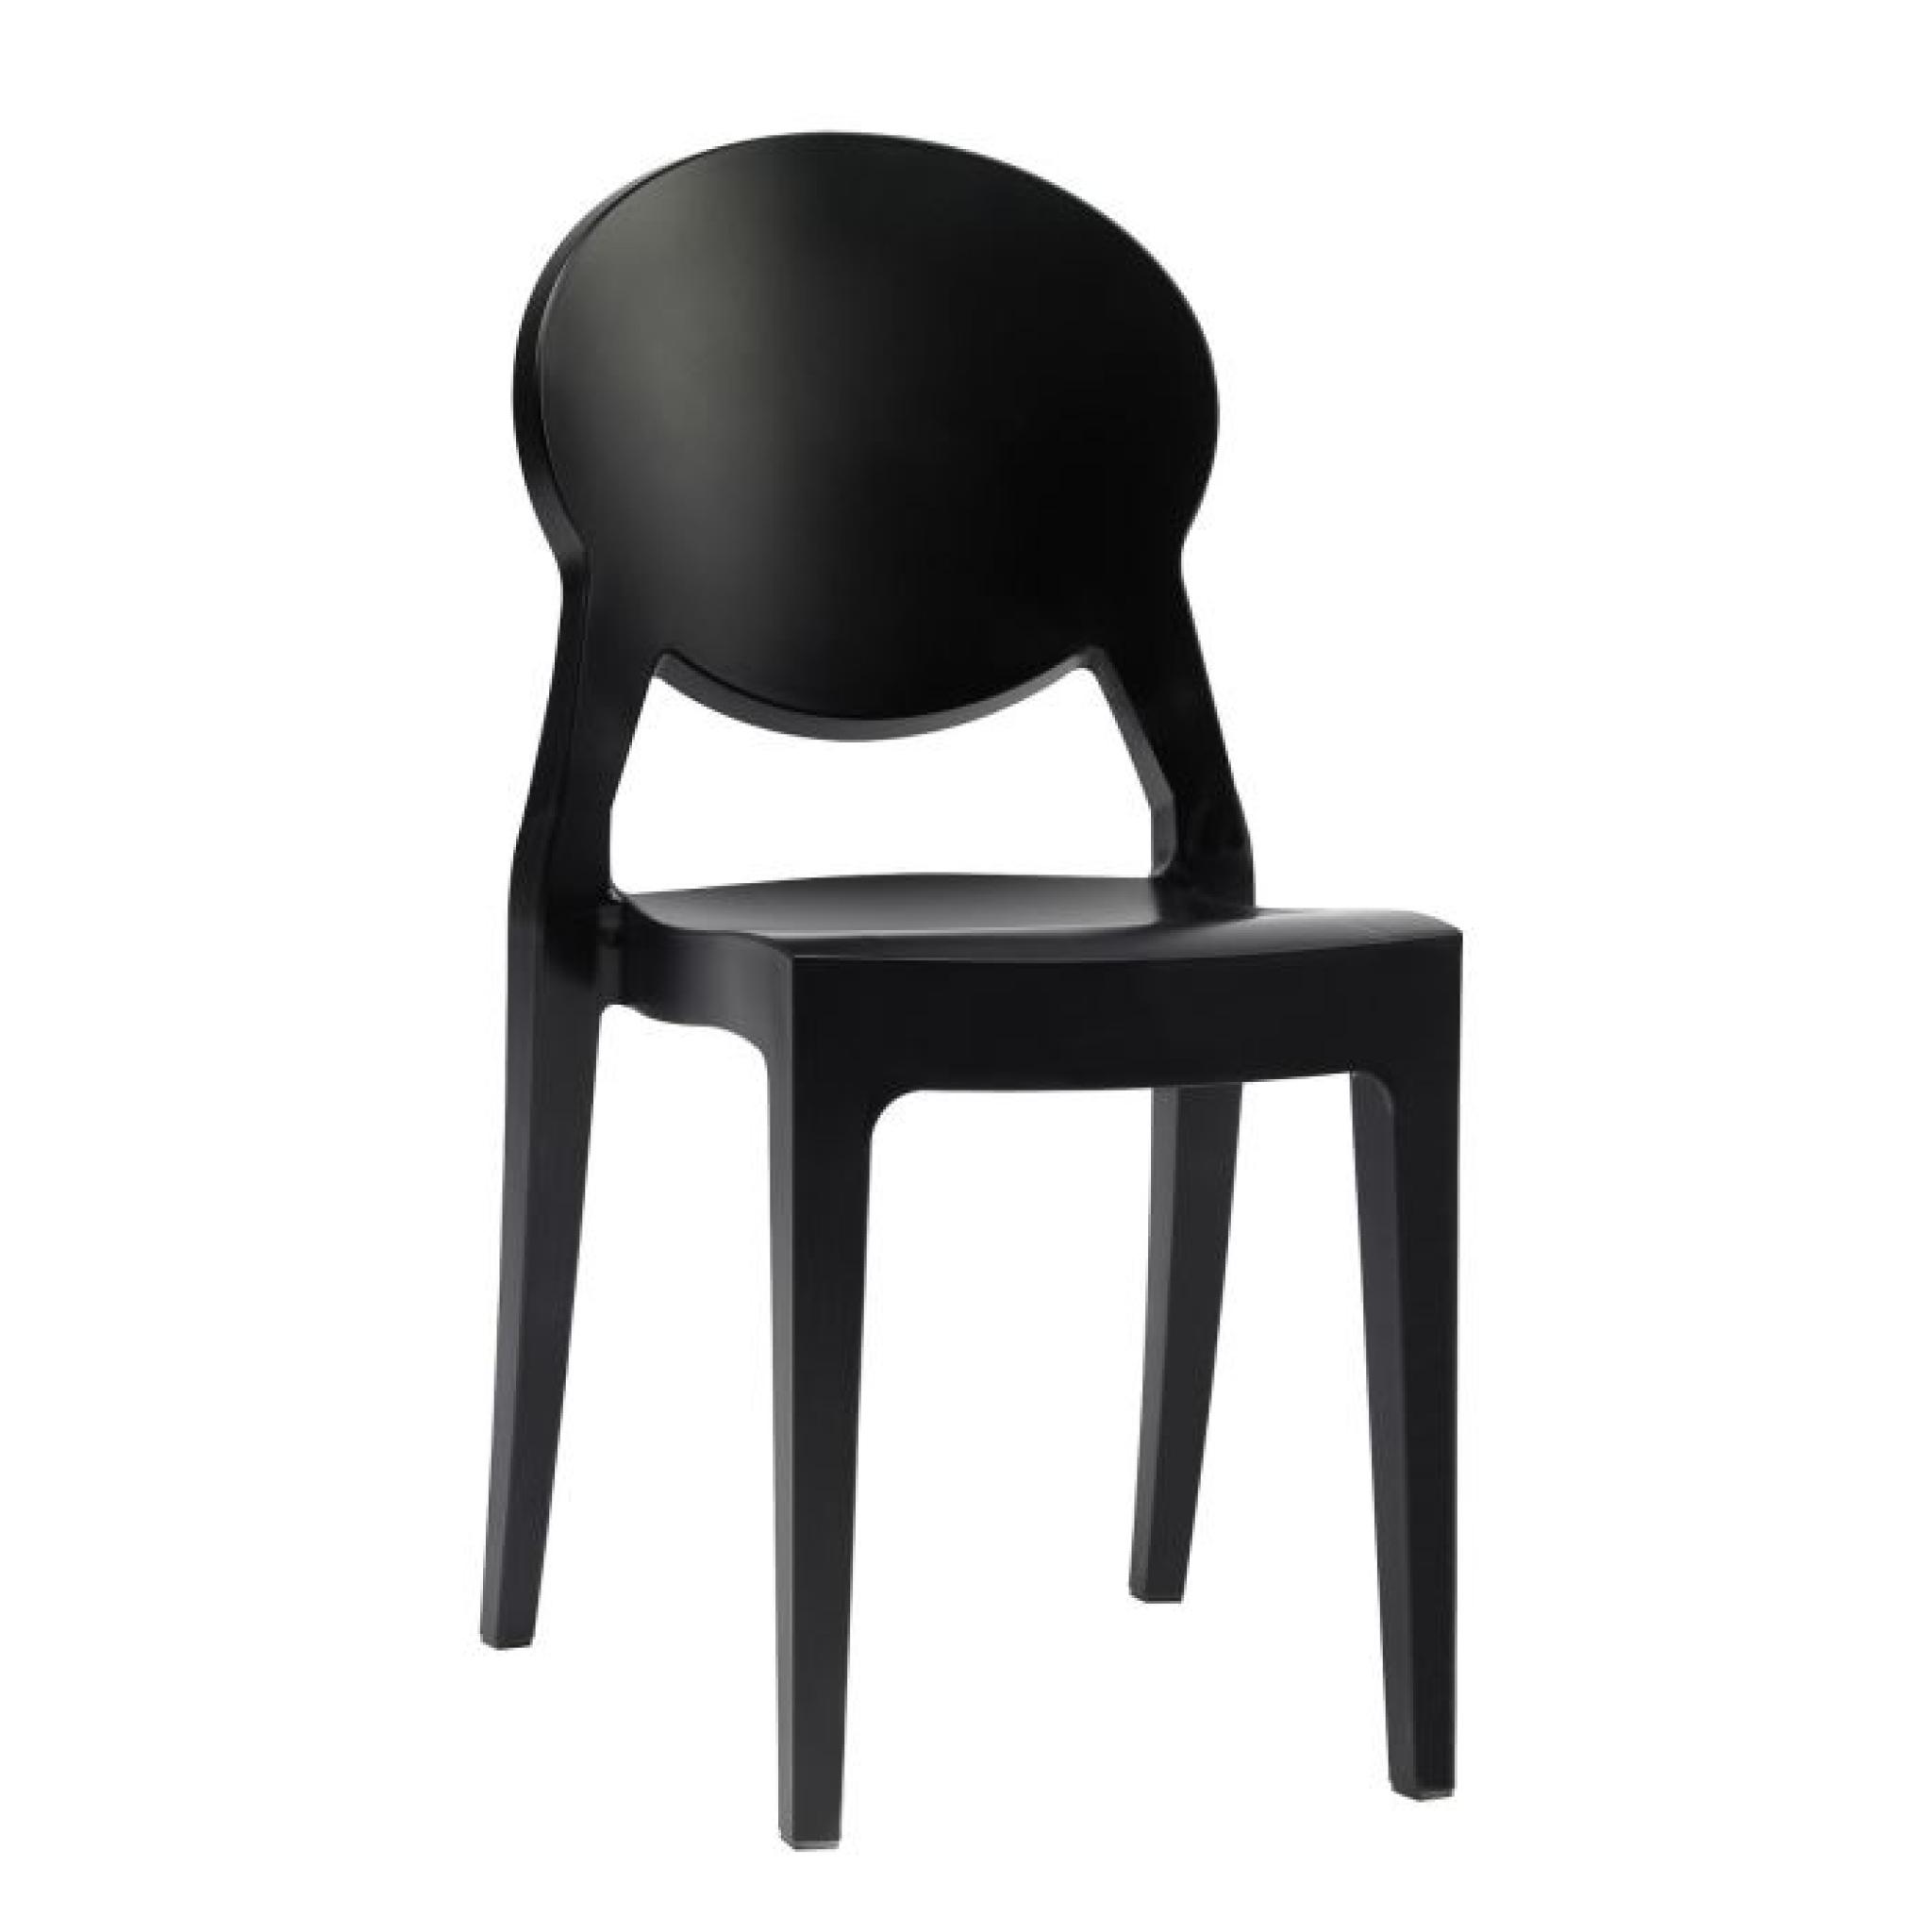 Chaise noire design - IGLOO noir - deco originale